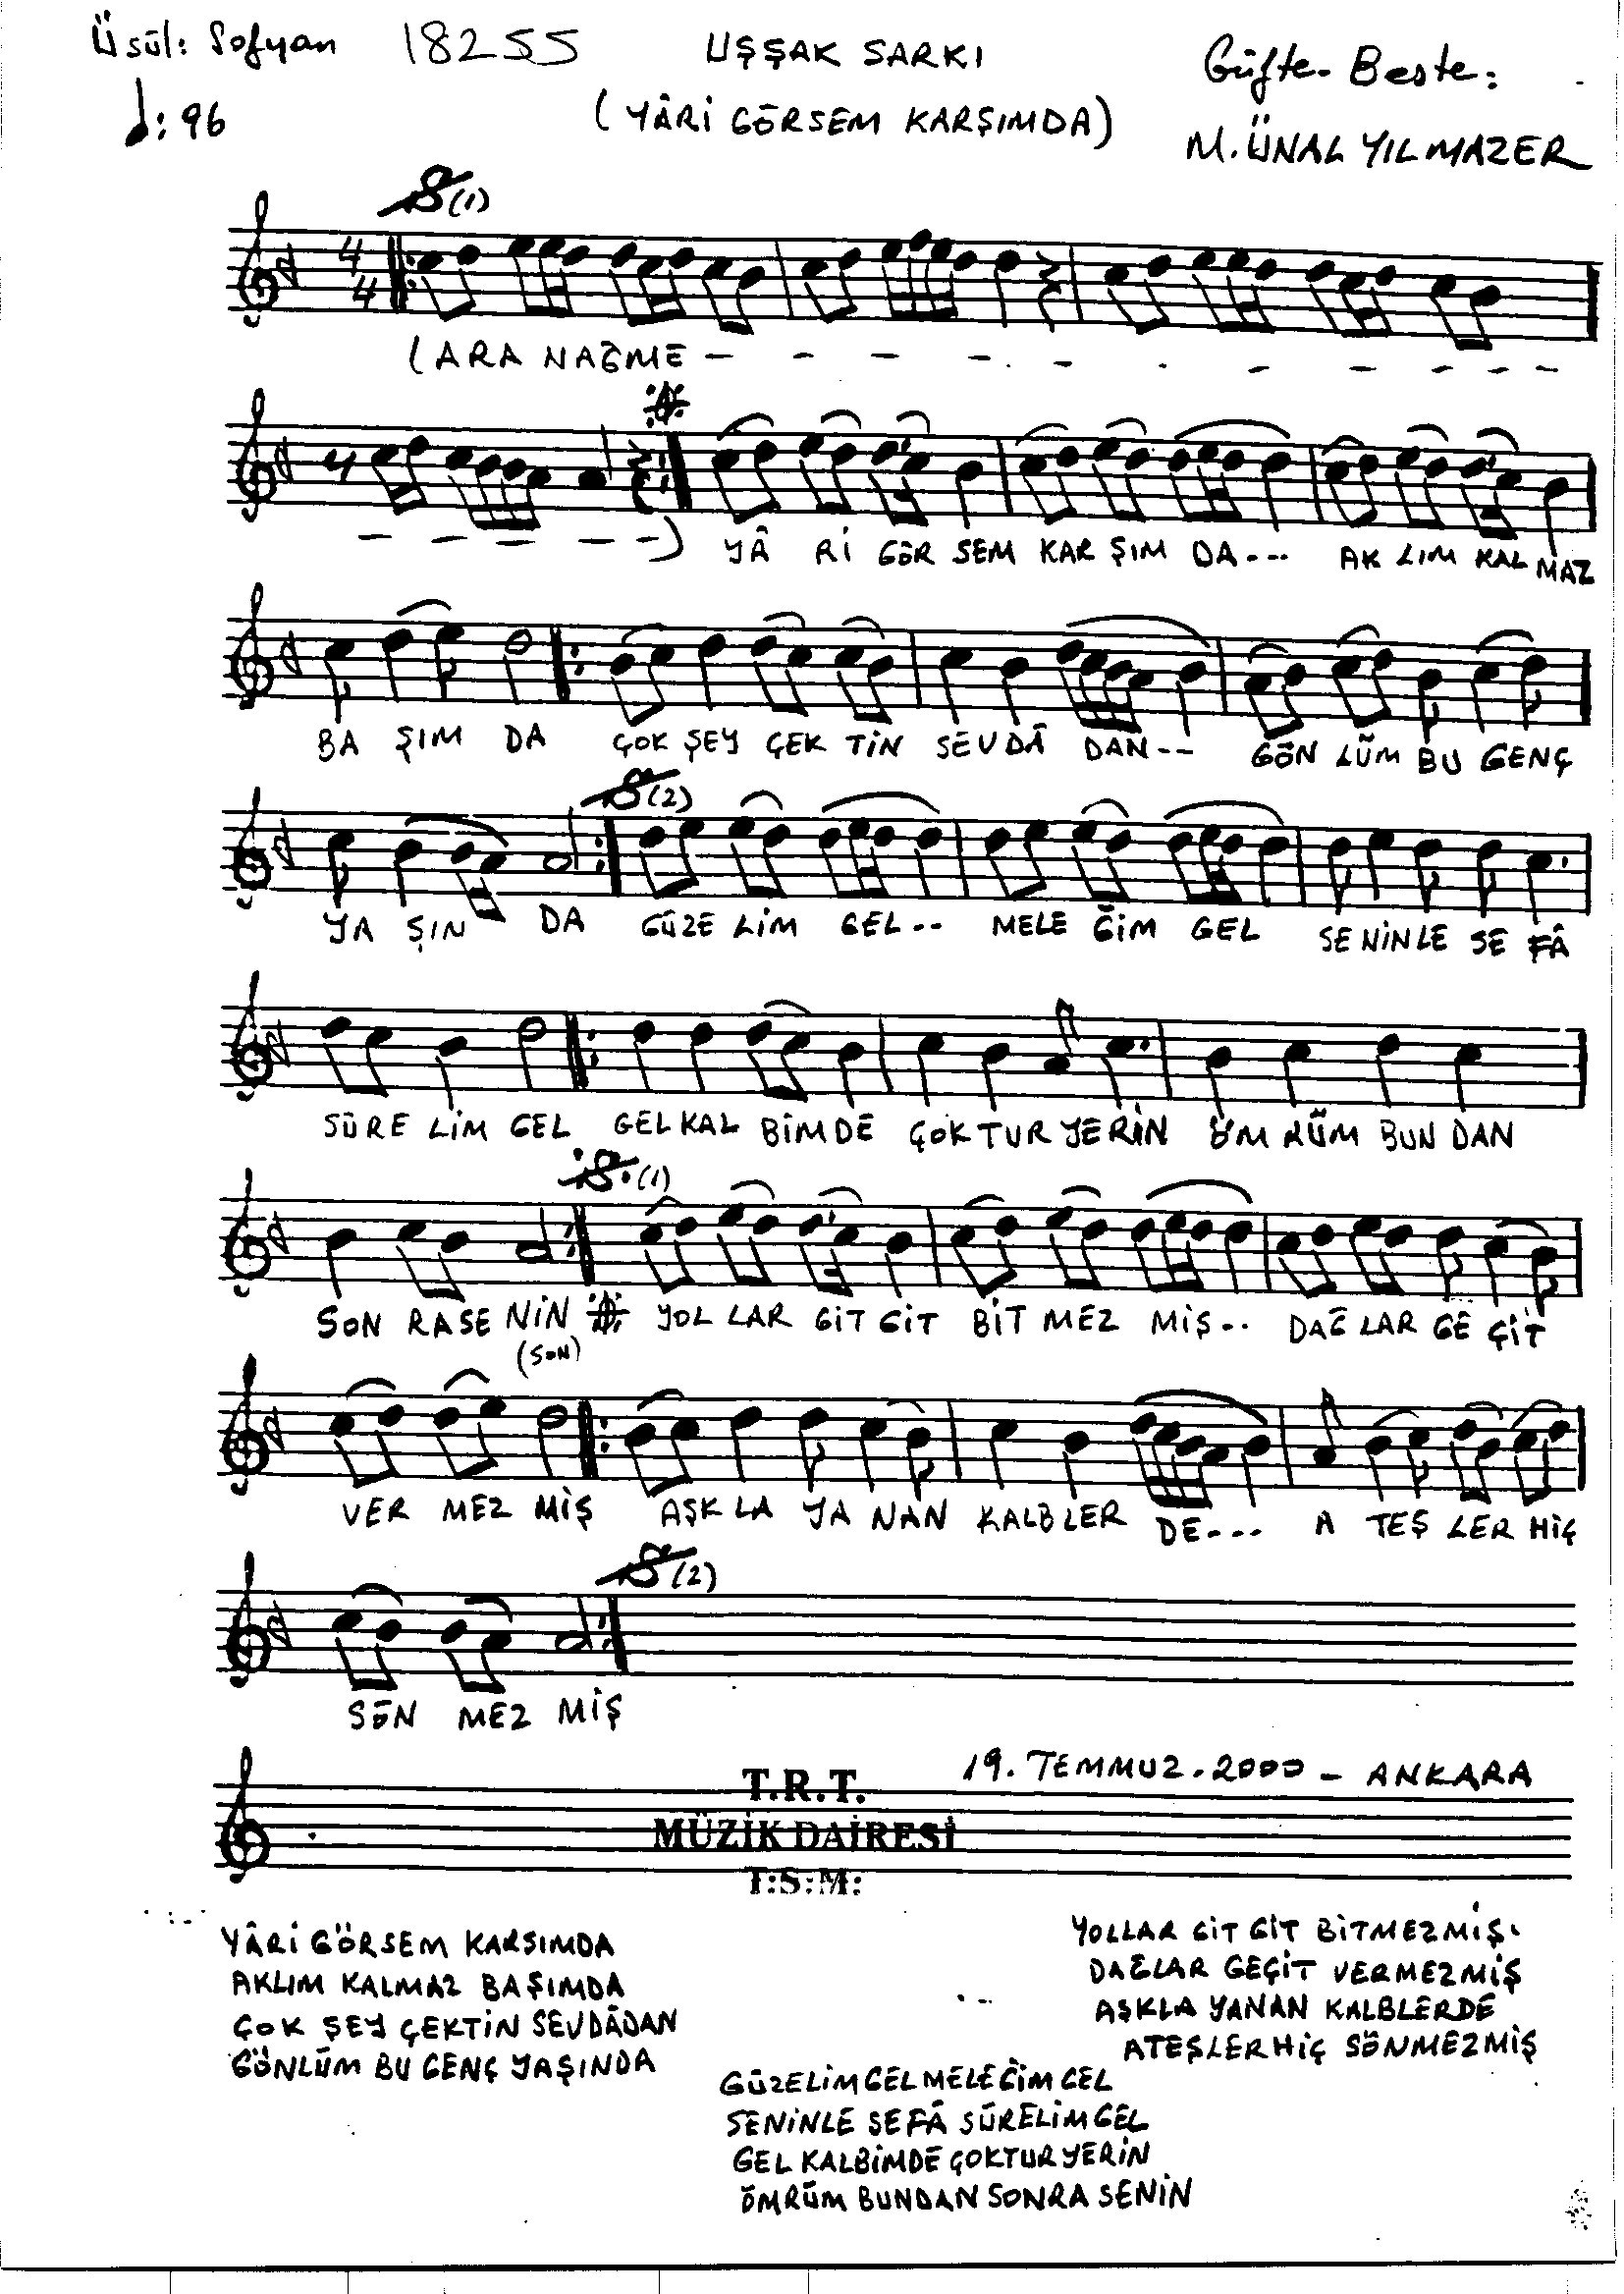 Uşşak - Şarkı - Mustafa Ünal Yılmazer - Sayfa 1